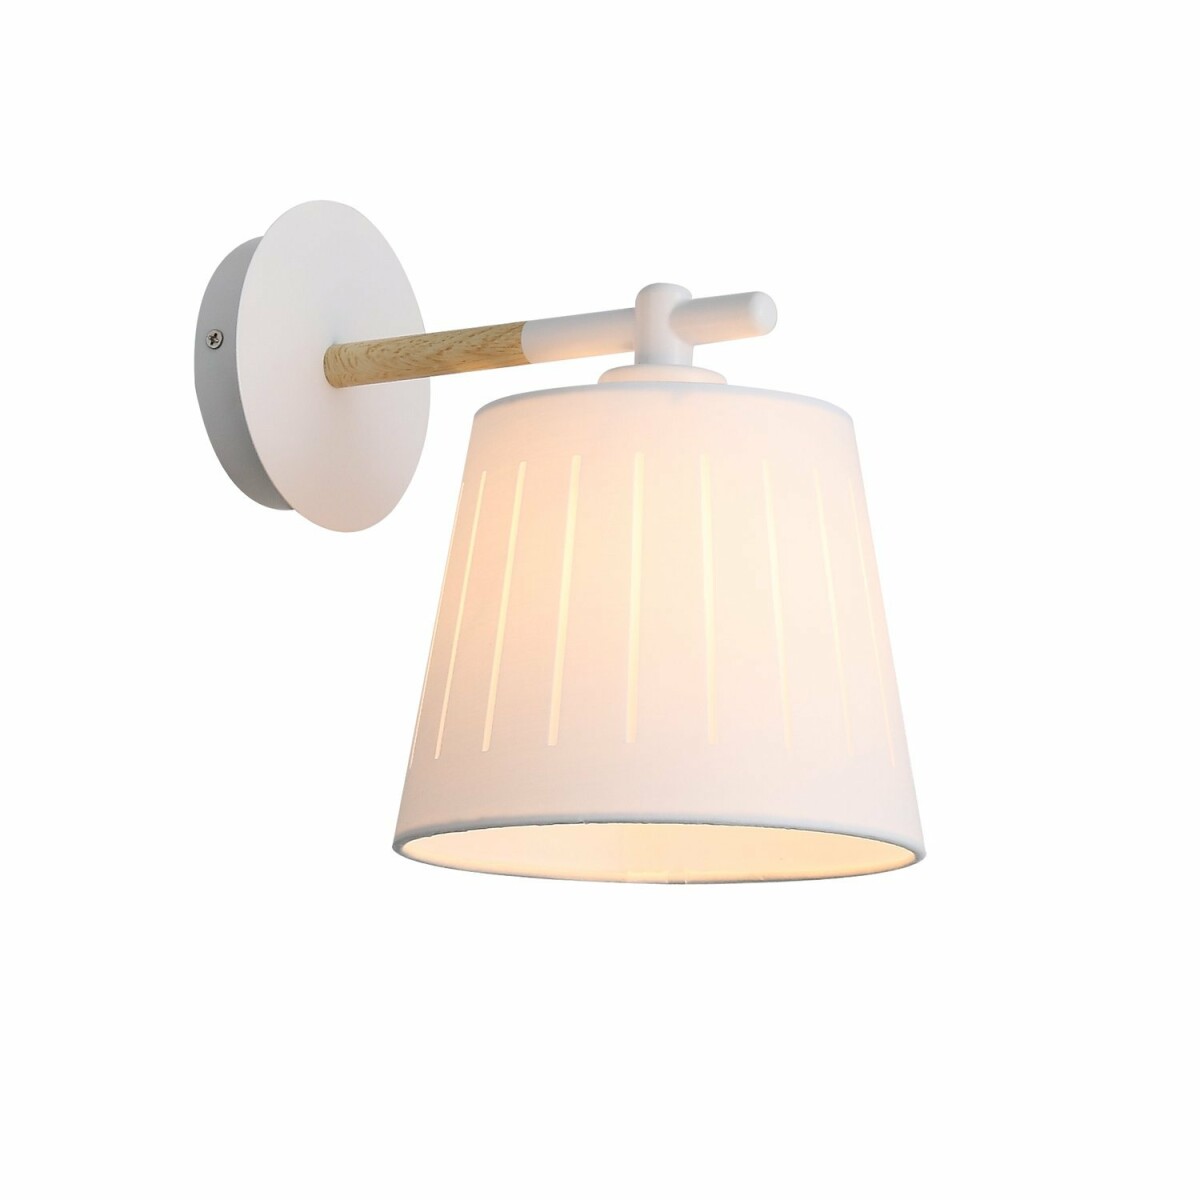 SLE114501-01 Светильник настенный Белый, Светлое дерево/Белый, Прозрачный E27 1*60W